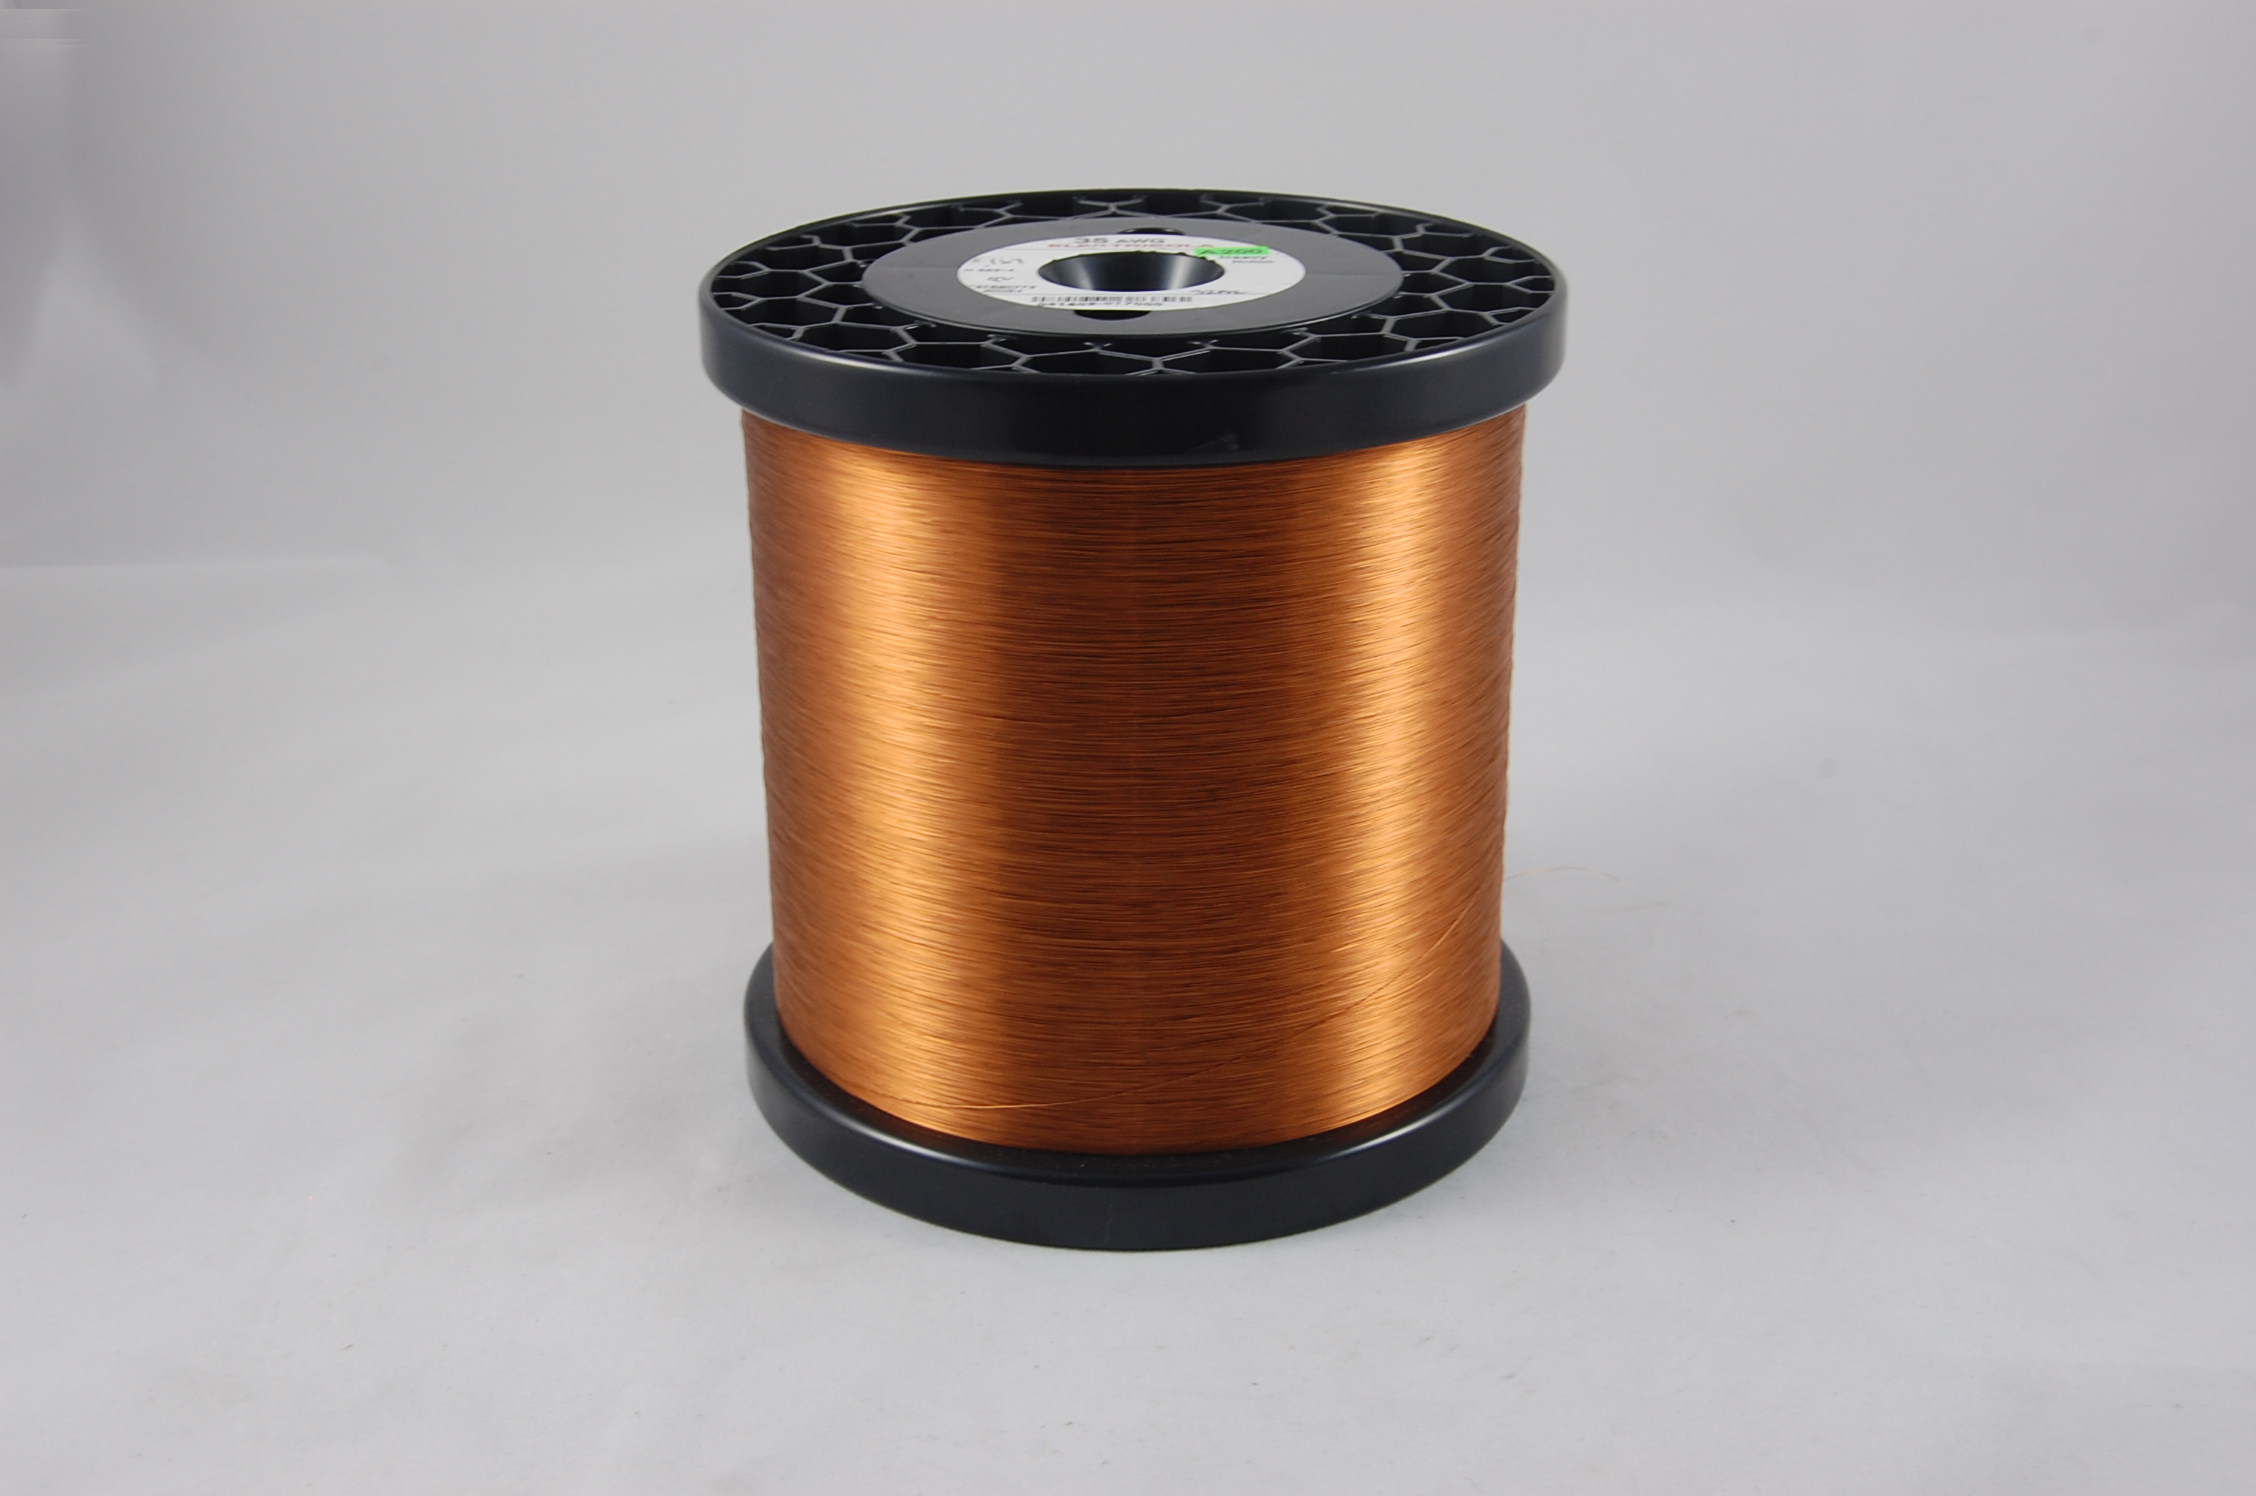 #44 Single Amidester 200 Round MW 74 Copper Magnet Wire 200°C, copper,  14 LB 6" x 6" spool (average wght.)